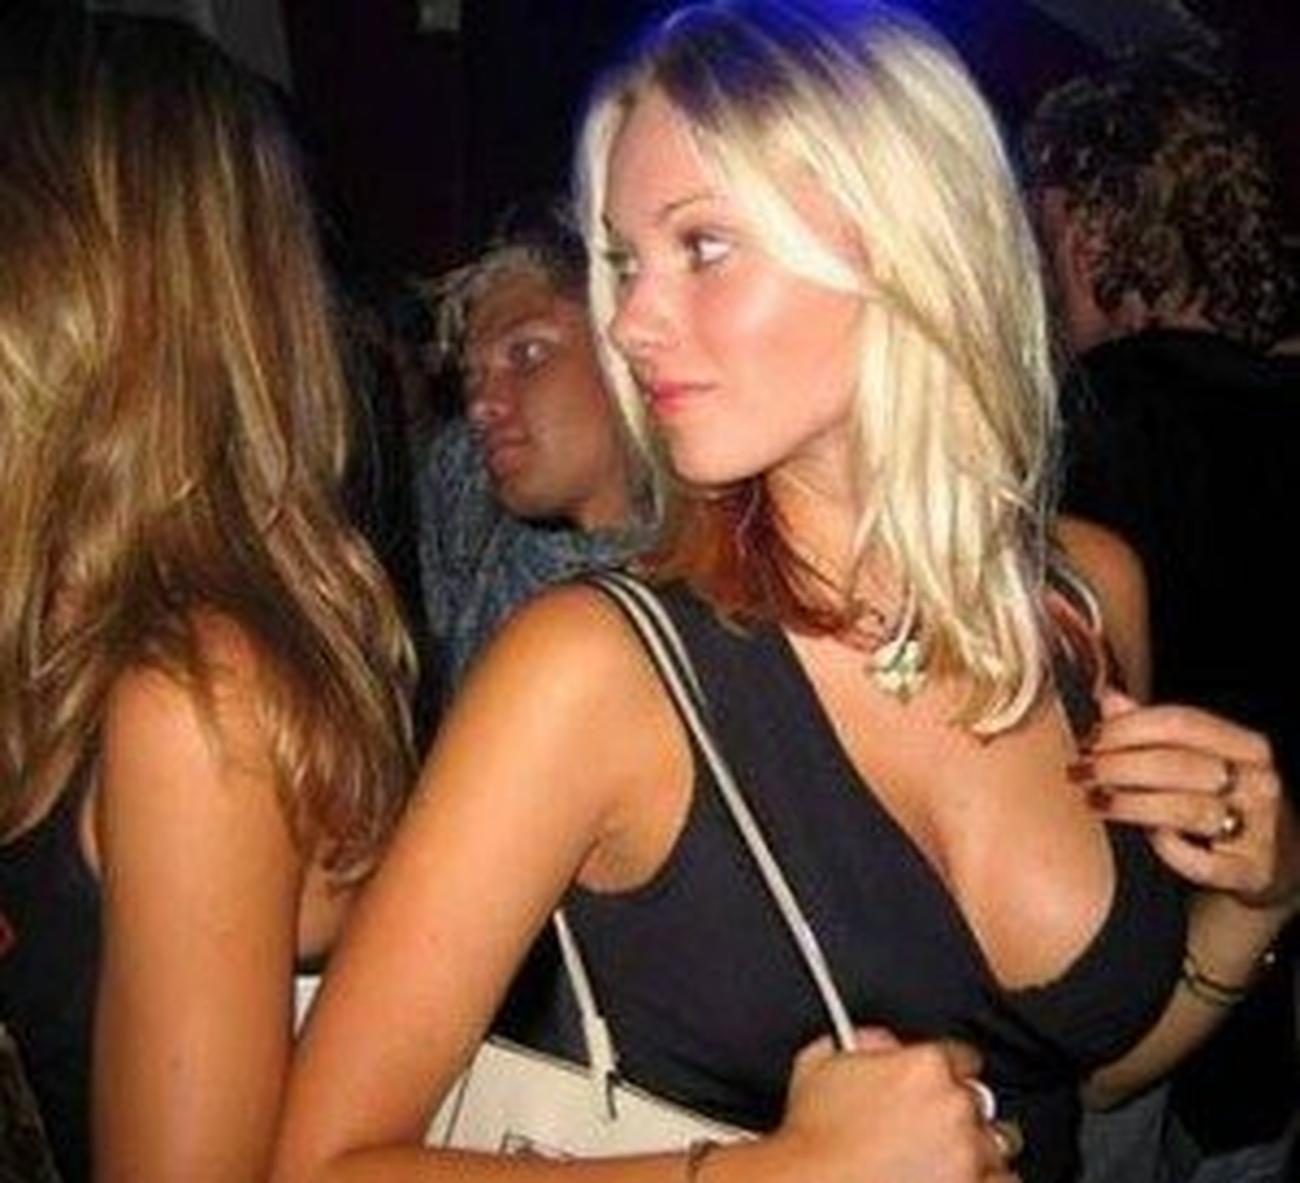 Photo of Rimorchiare una ragazza in discoteca